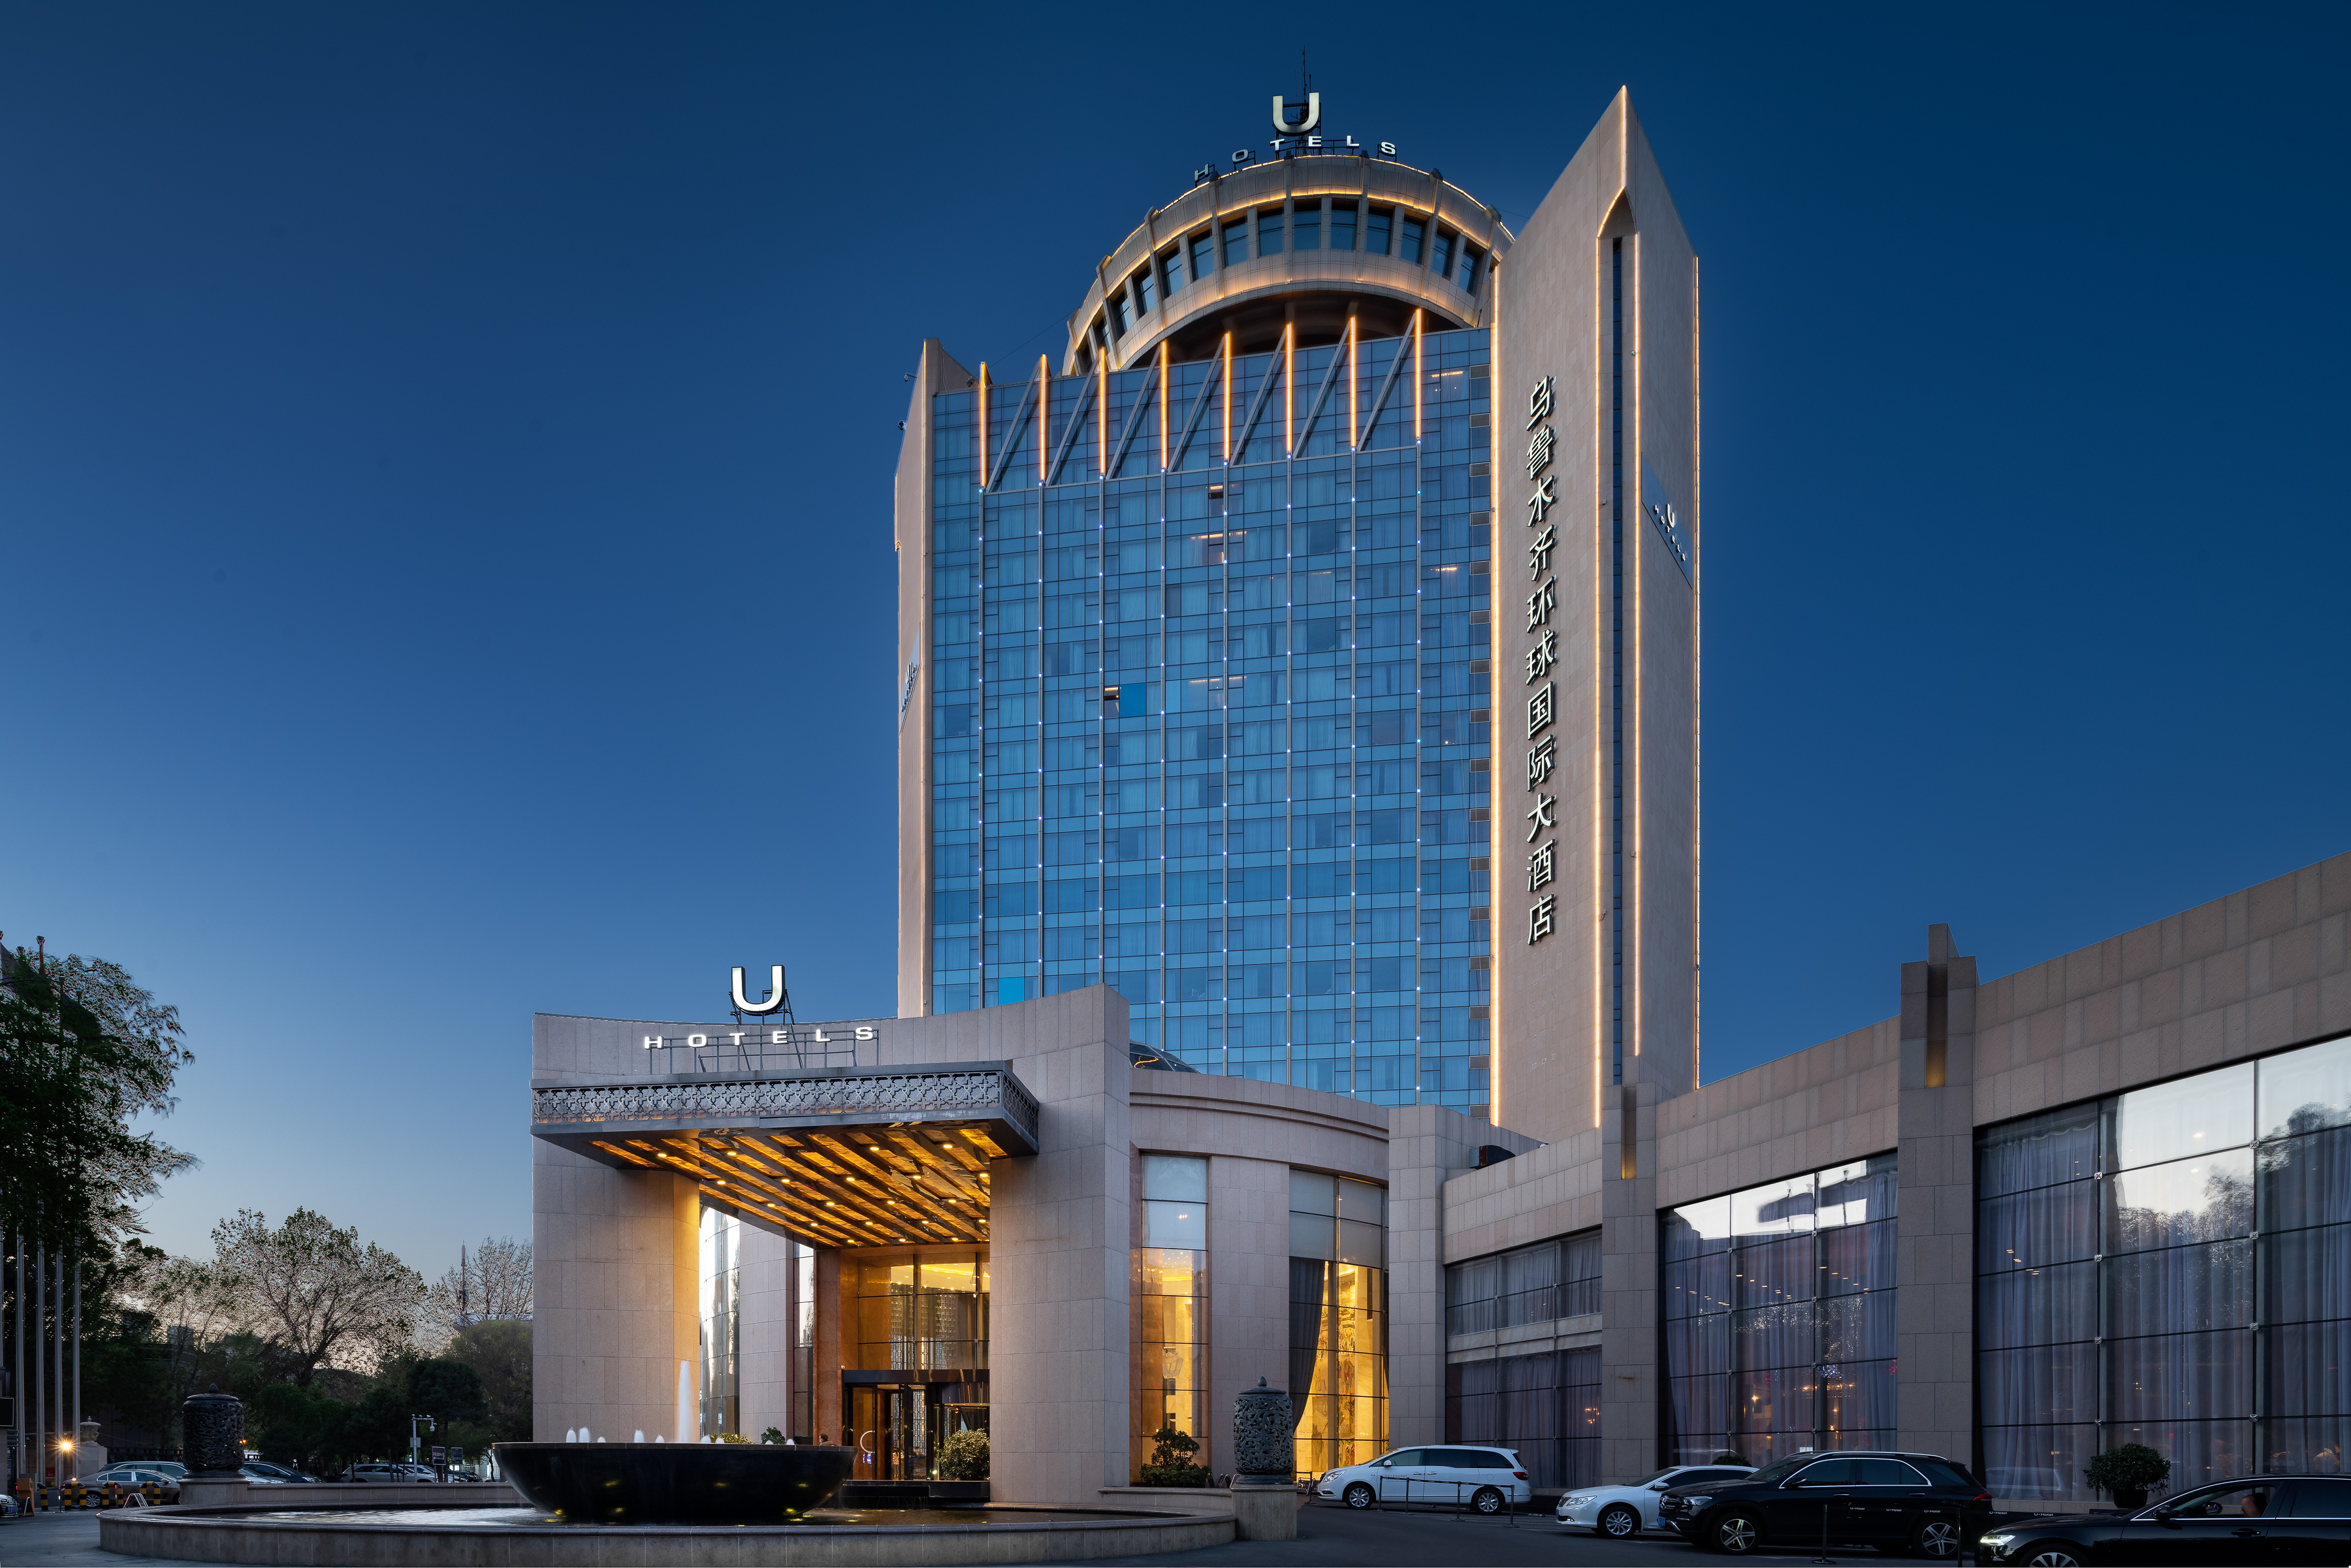 乌鲁木齐环球国际大酒店